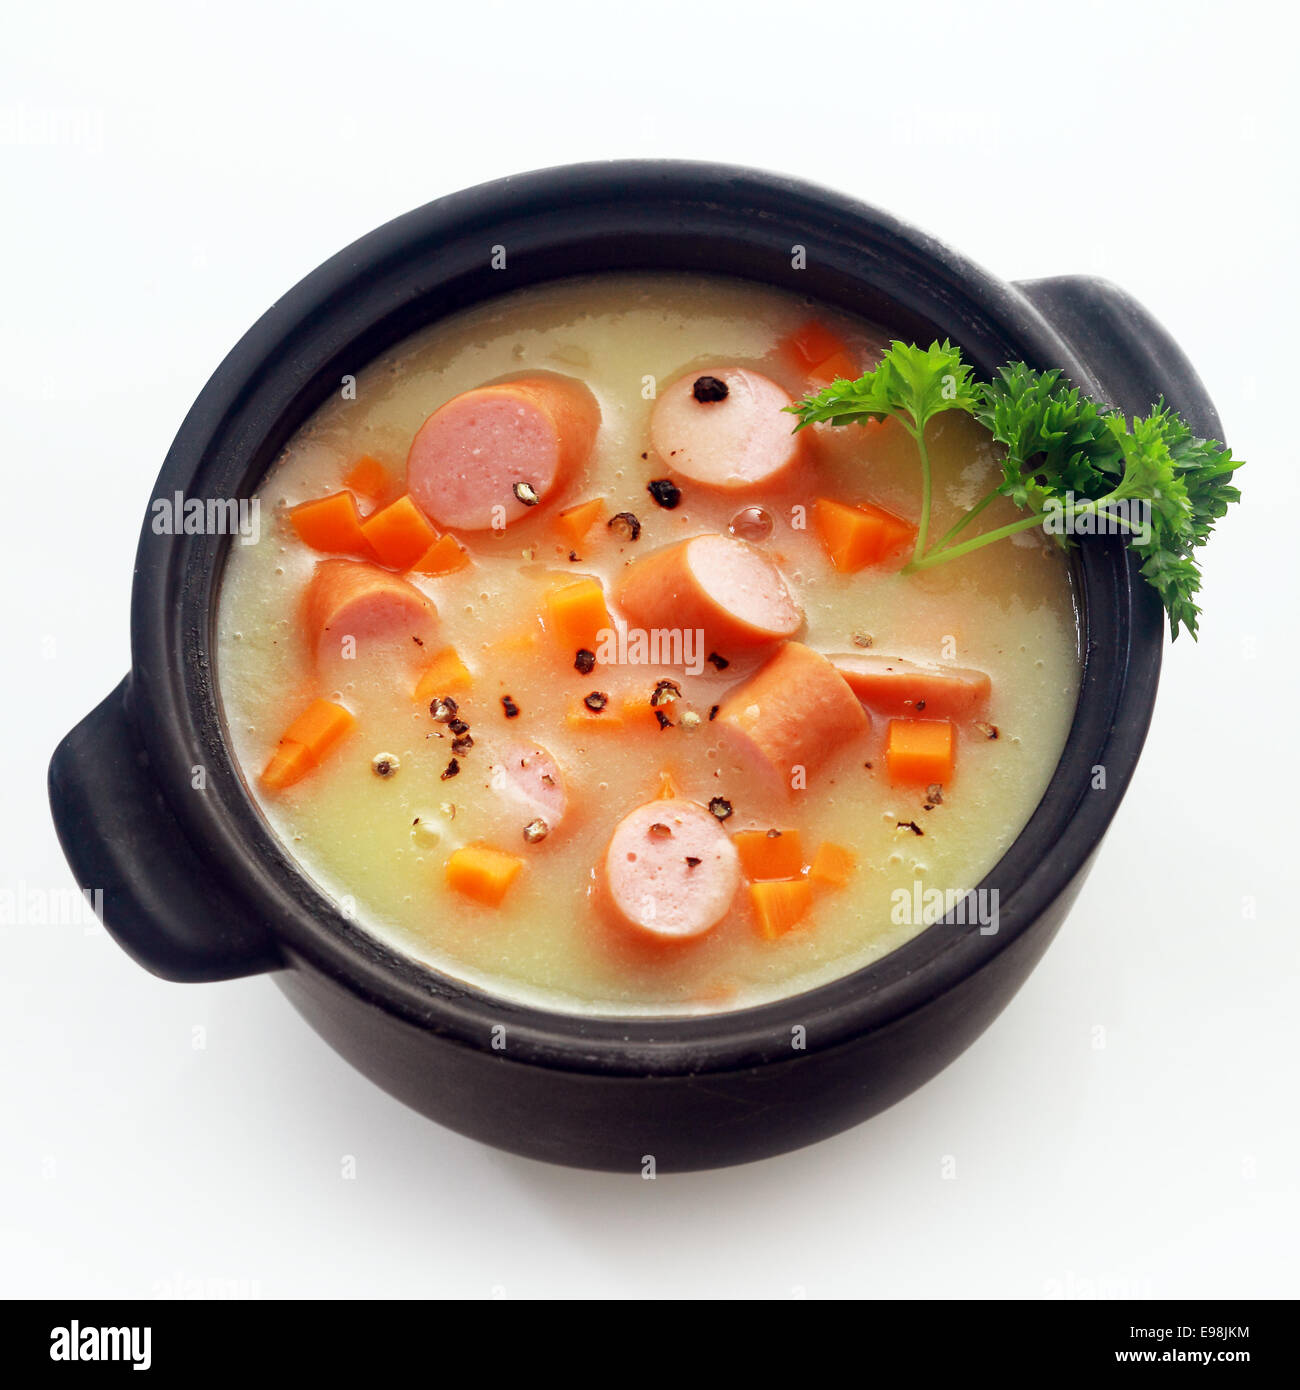 Schließen Sie sich gesunde Kurs appetitlich cremige Suppe Hauptgericht mit Wurstscheiben auf schwarzen Topf, Isolated on White Background. Stockfoto